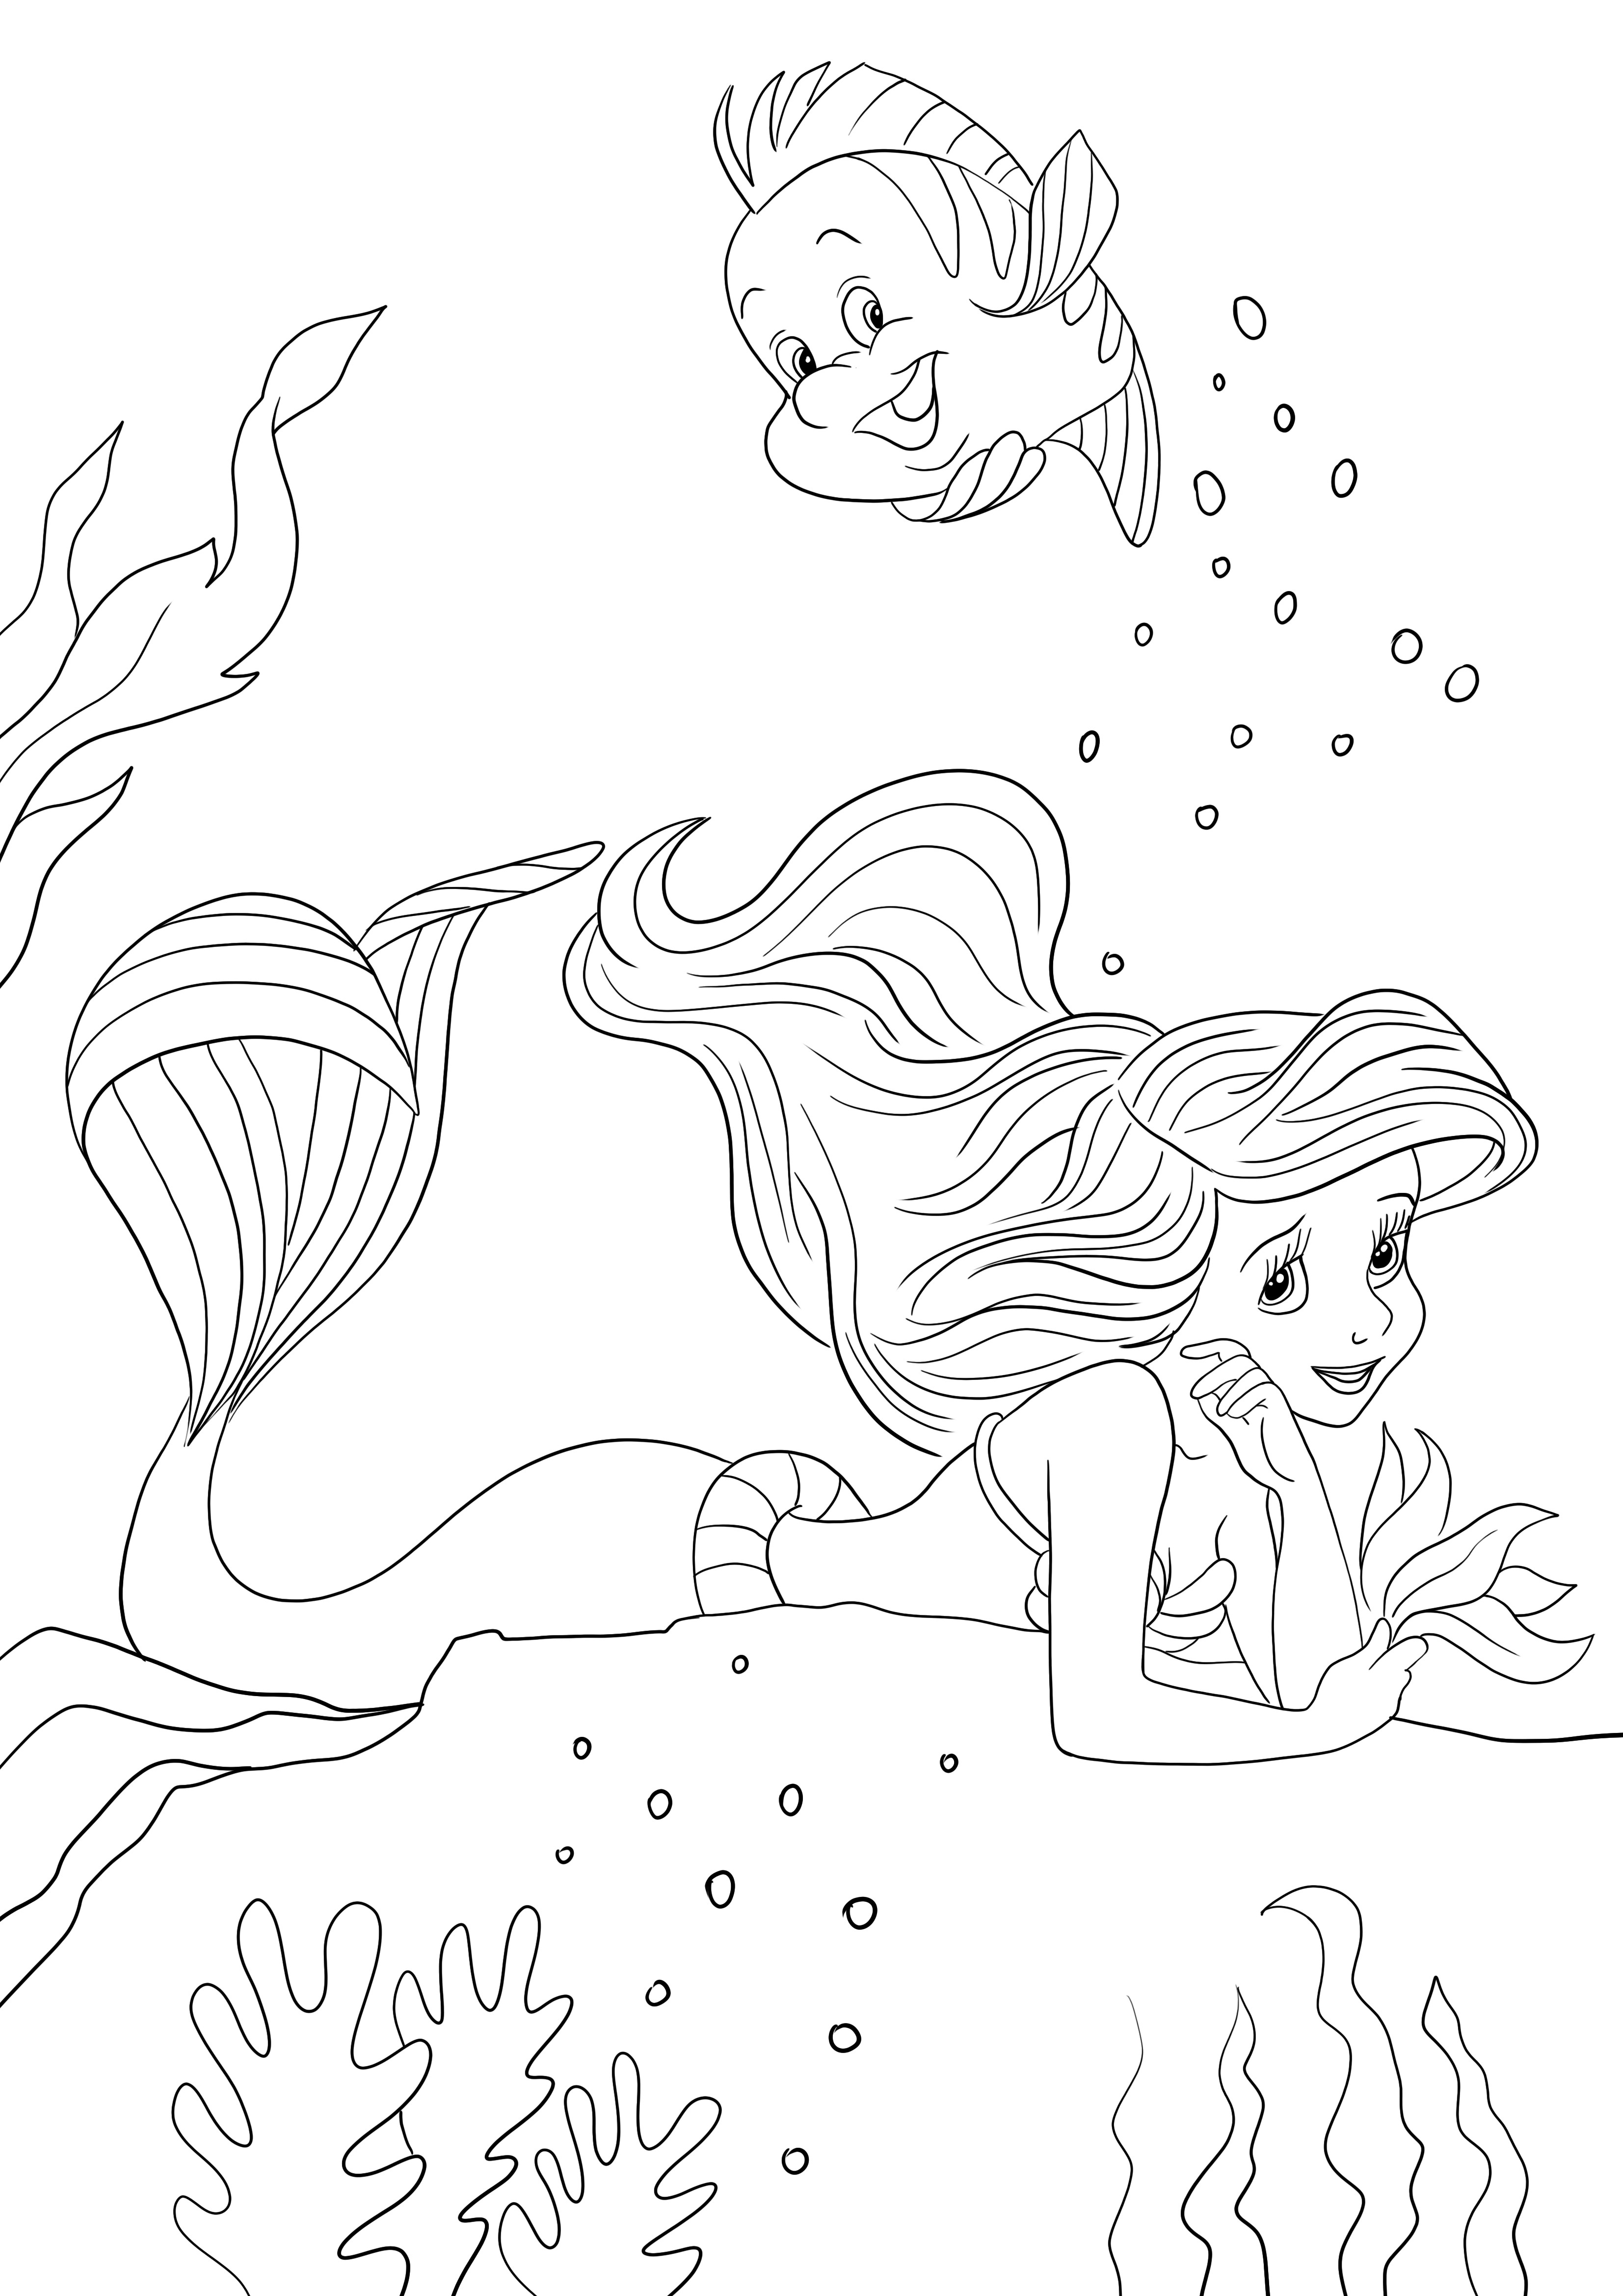 Ariel memimpikan halaman mewarnai untuk anak-anak untuk pencetakan gratis